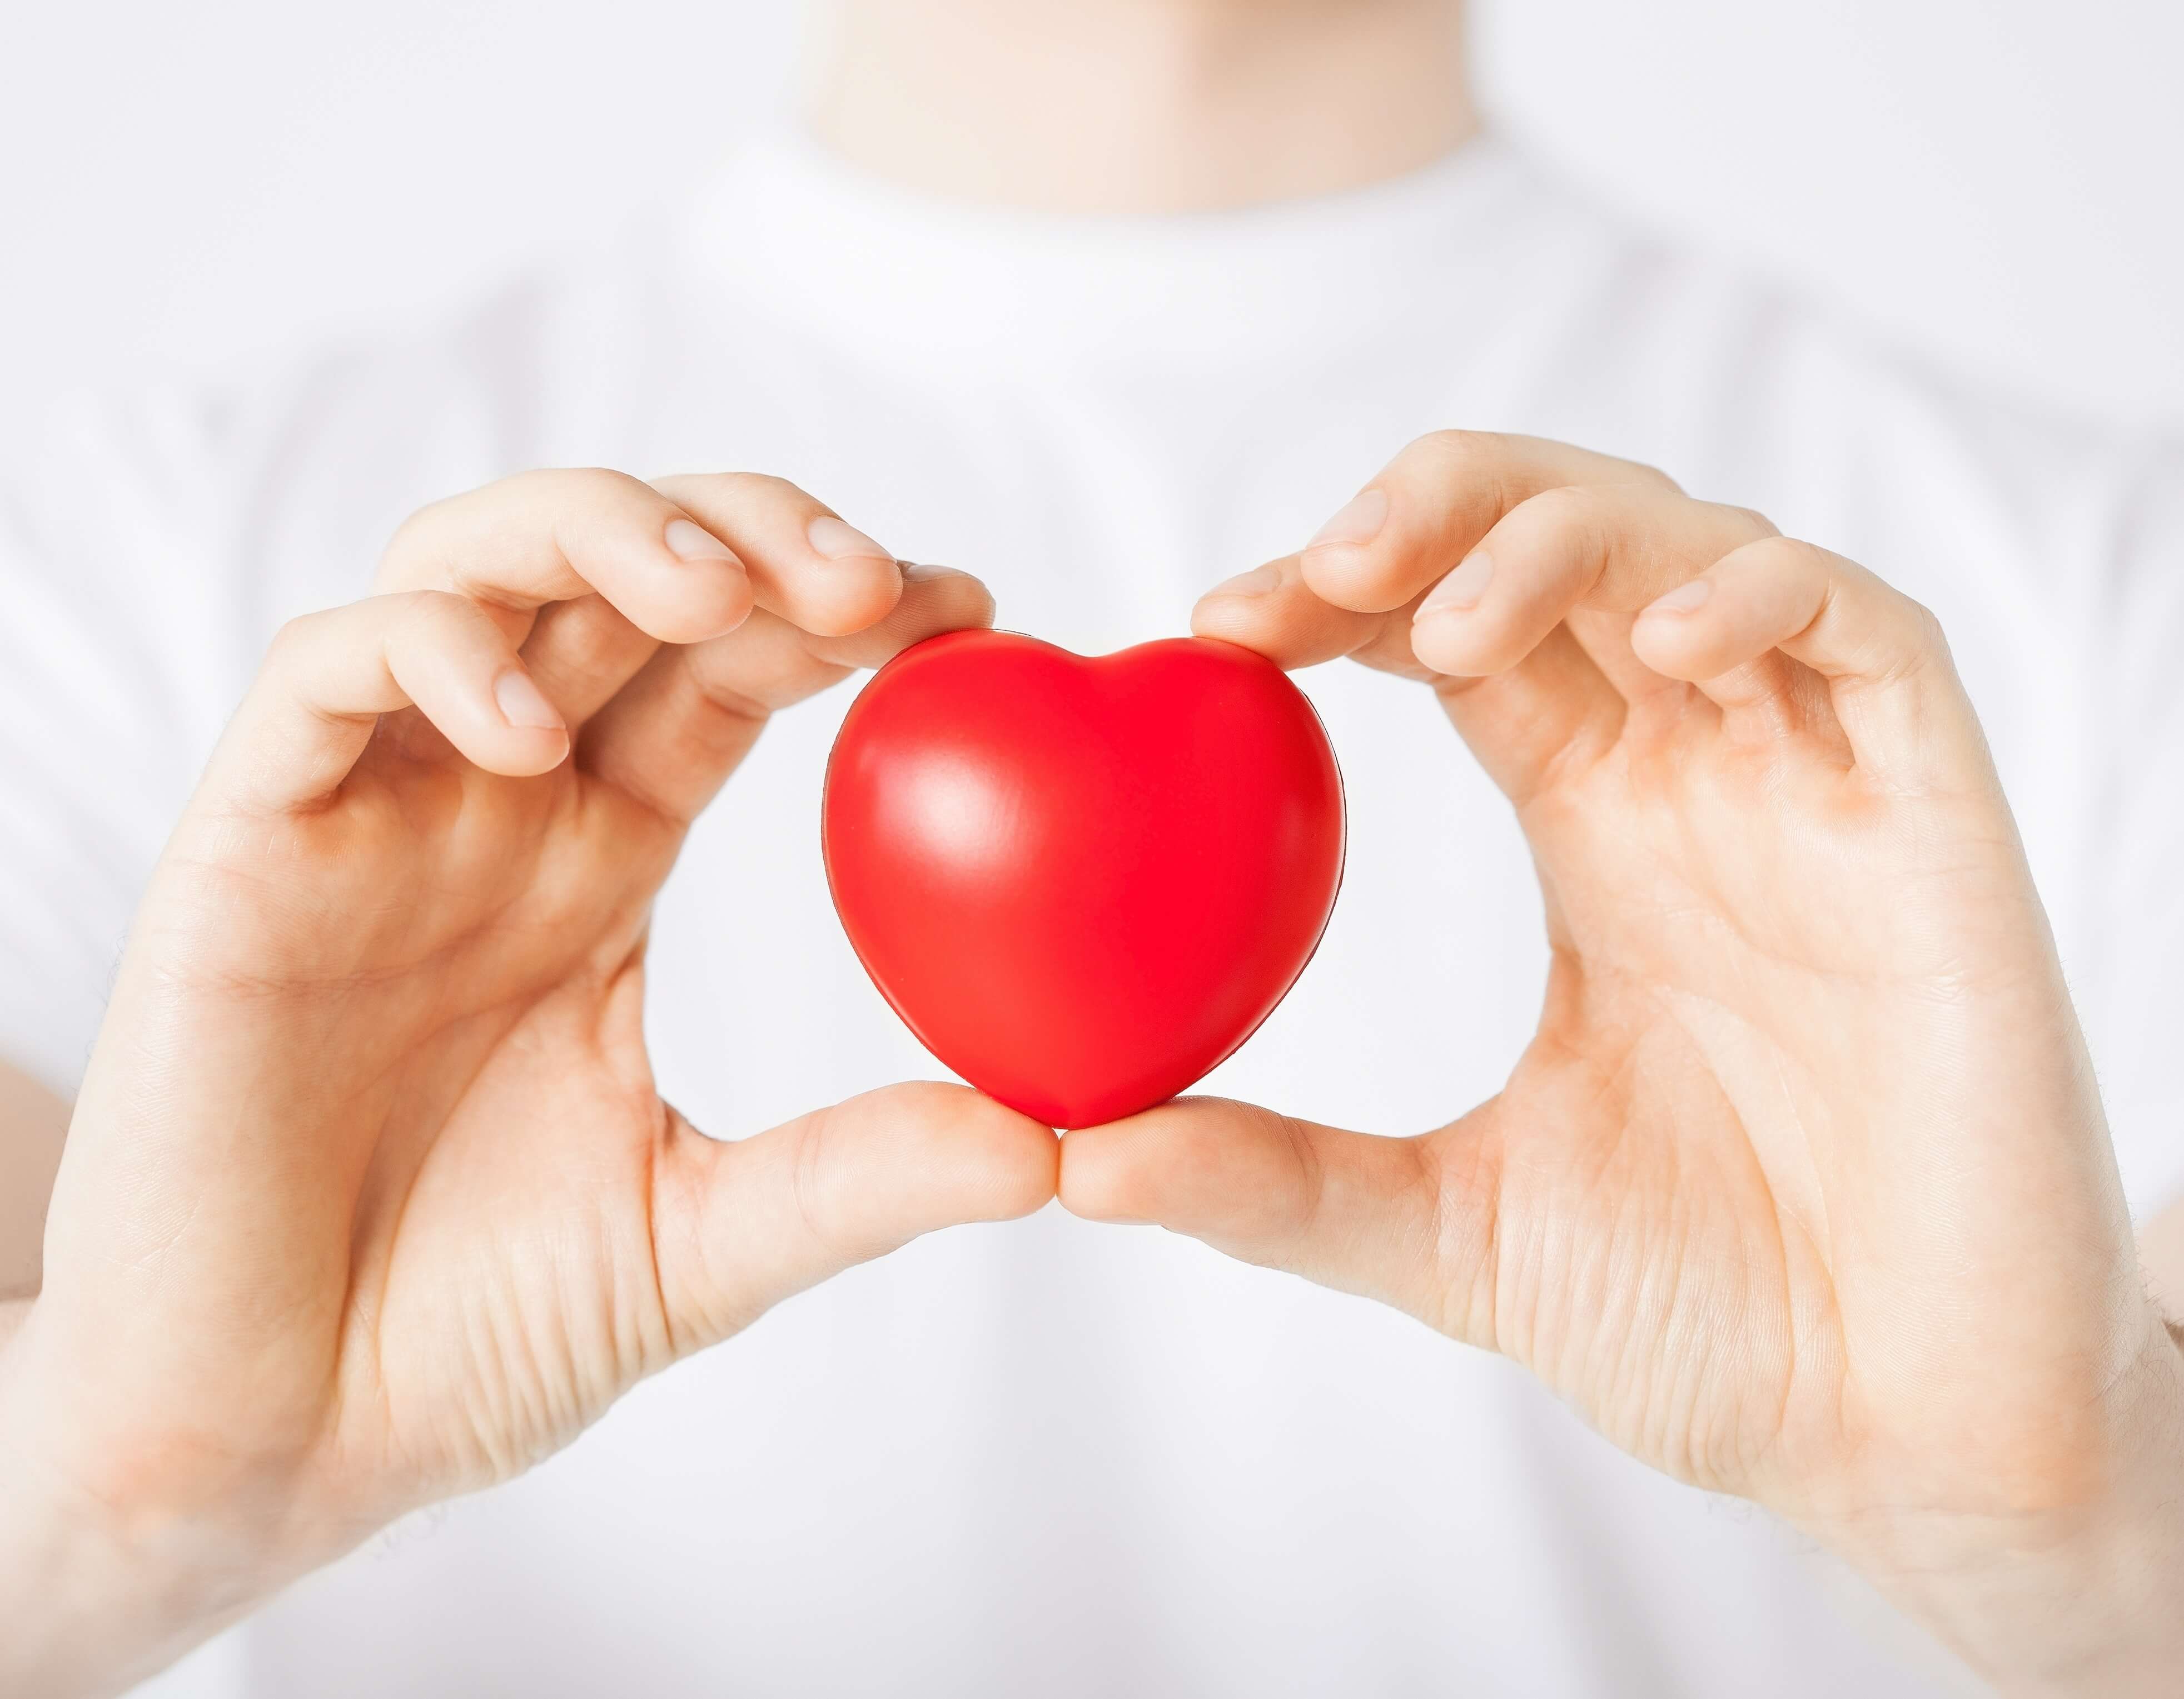 “Nuestros ritmos de vida favorecen el desarrollo de enfermedades cardiovasculares”